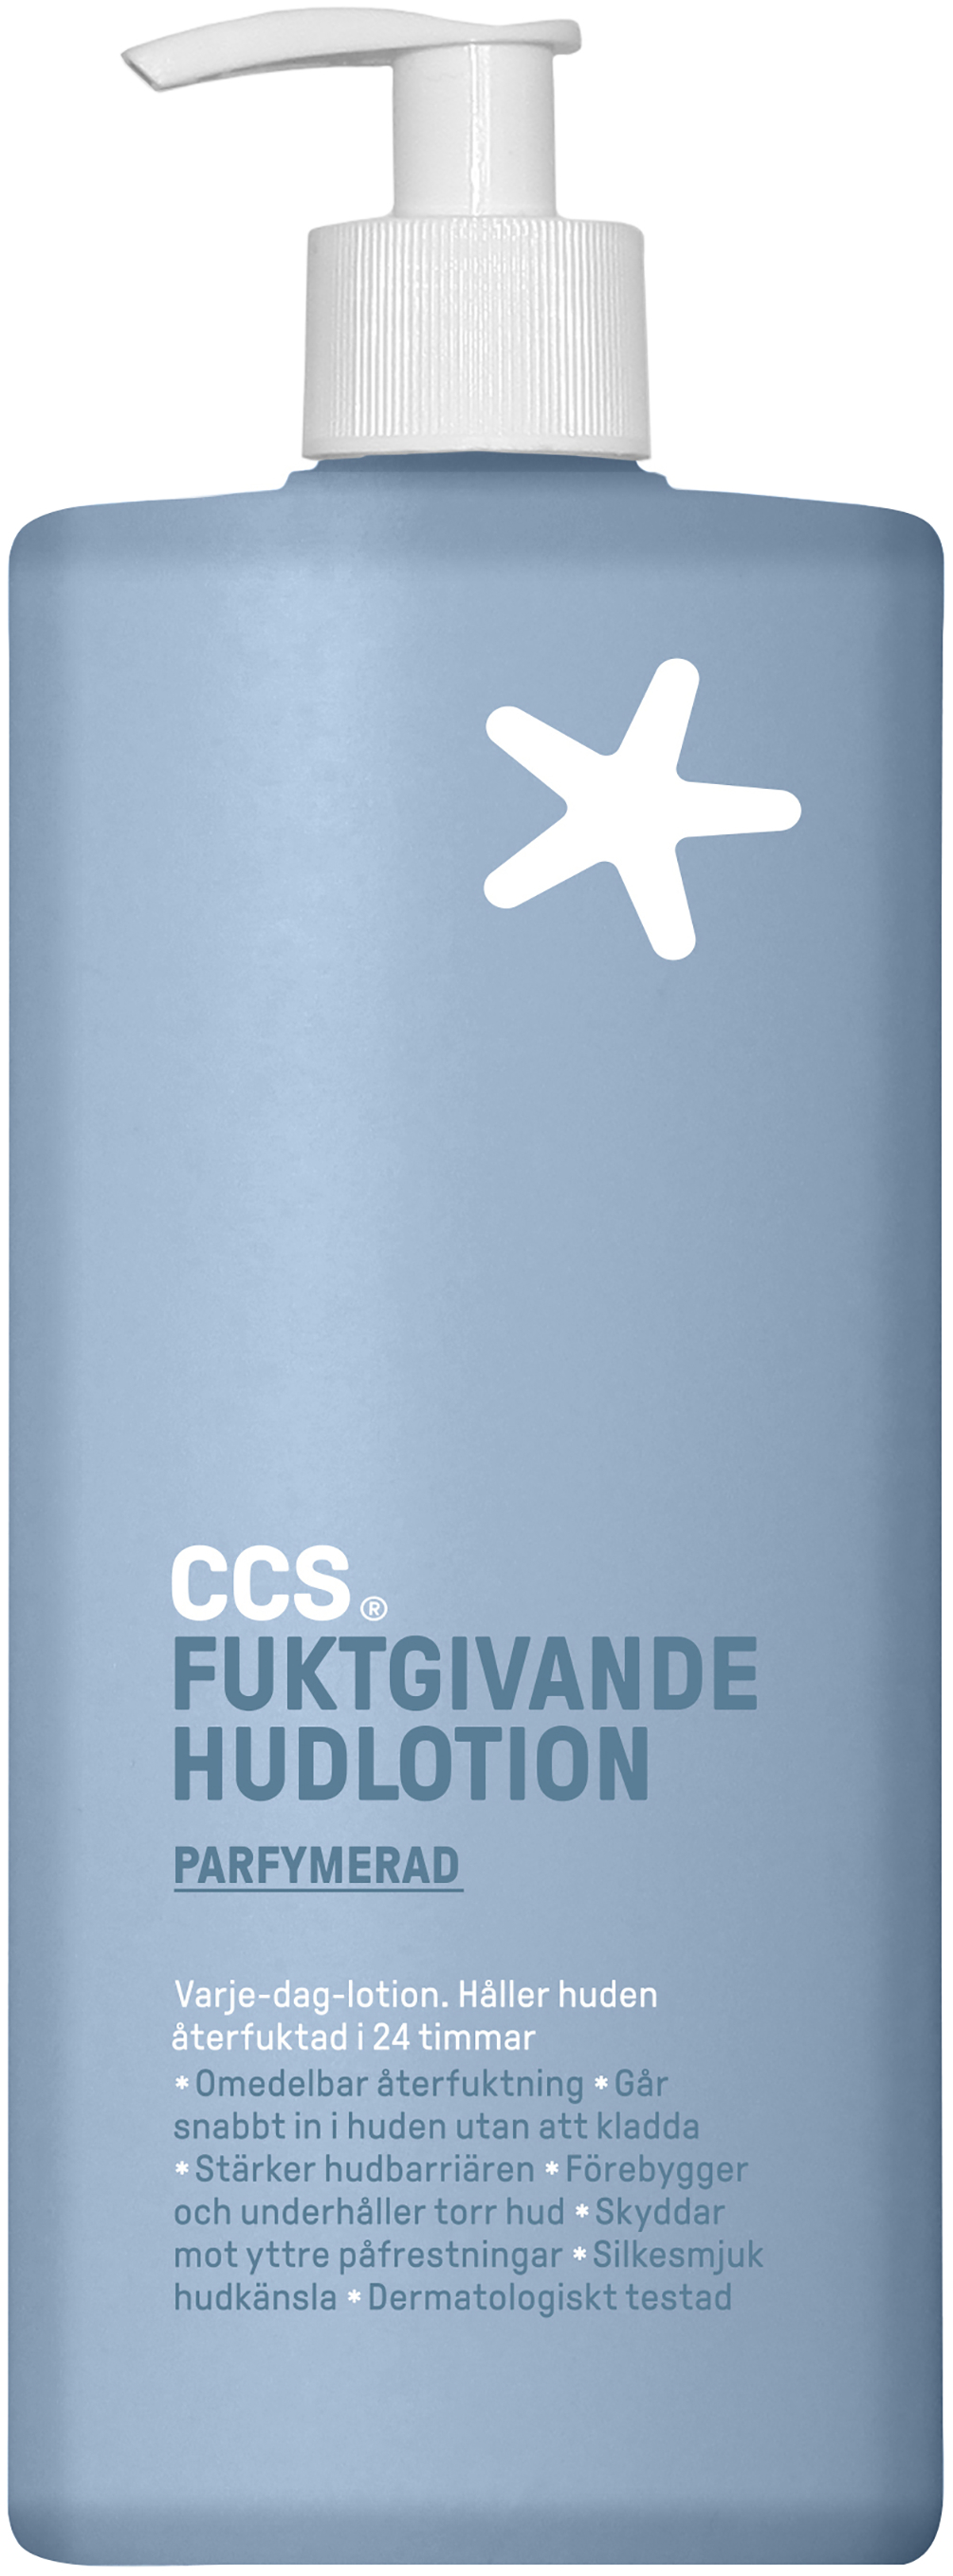 CCS Fuktgivande hudlotion Parf 350ml